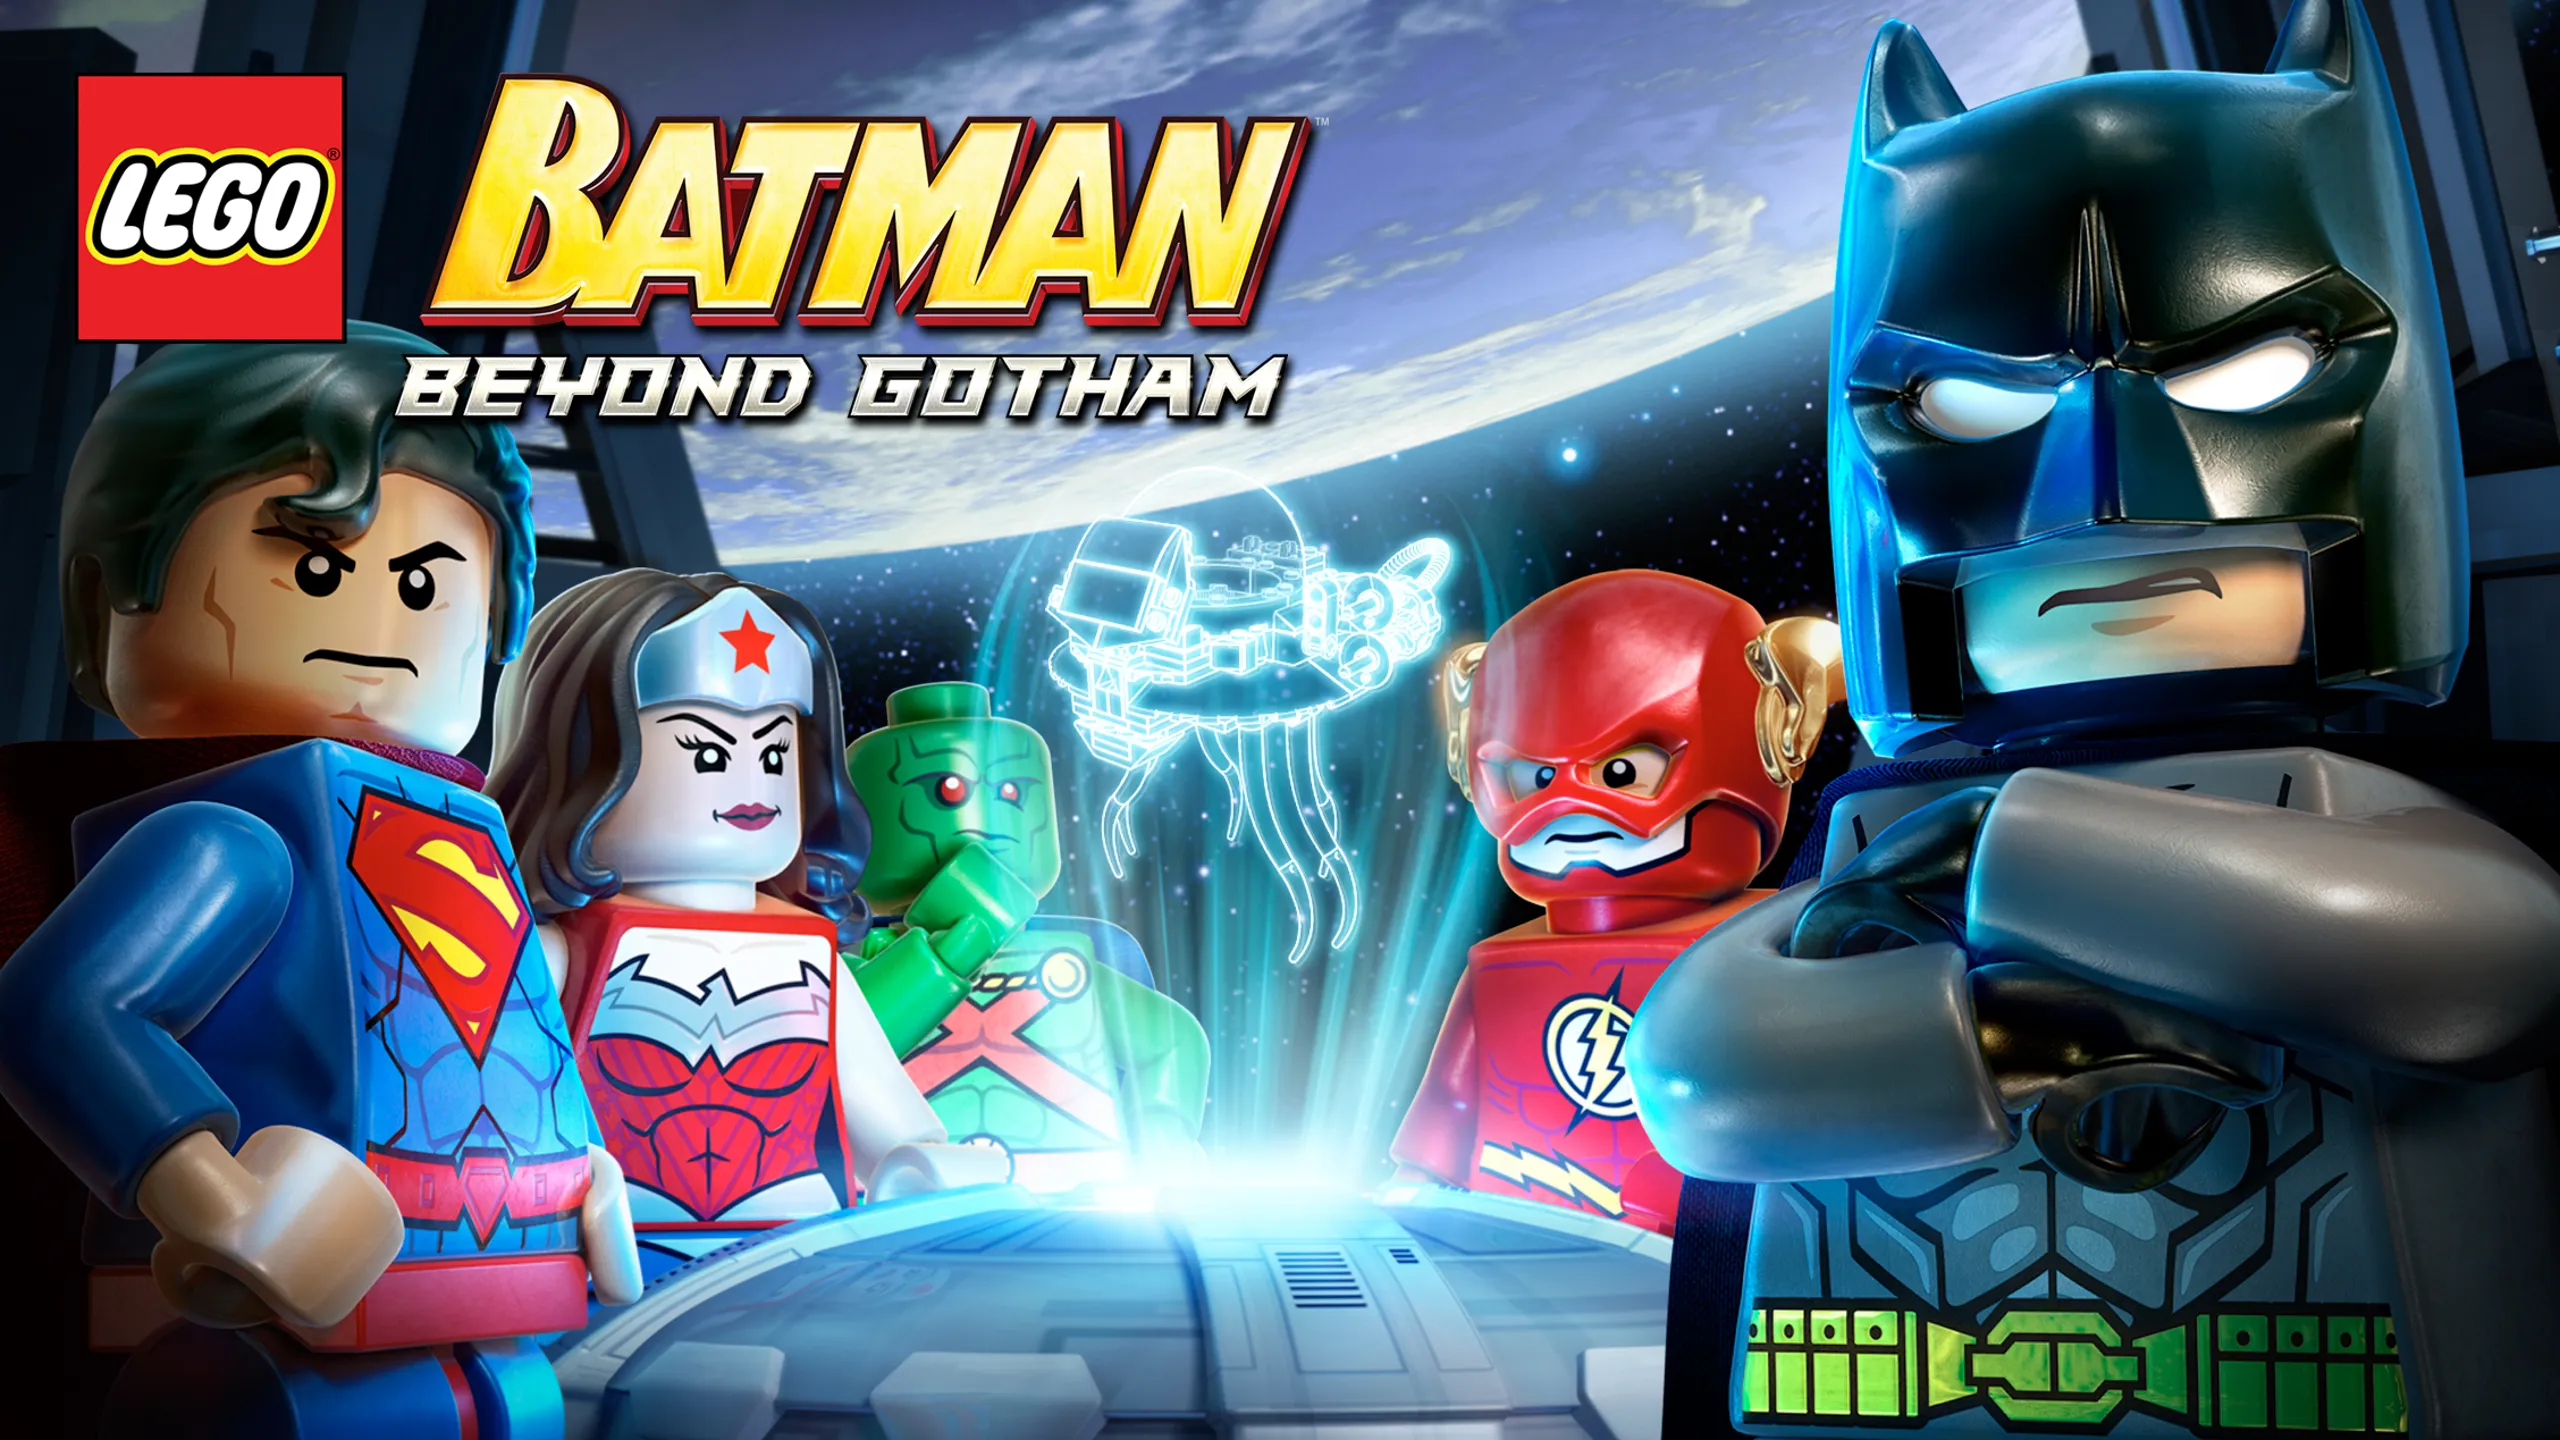 Lego New Super Hero DC Comics Minifigures Batman Cat-woman More YOU PICK!